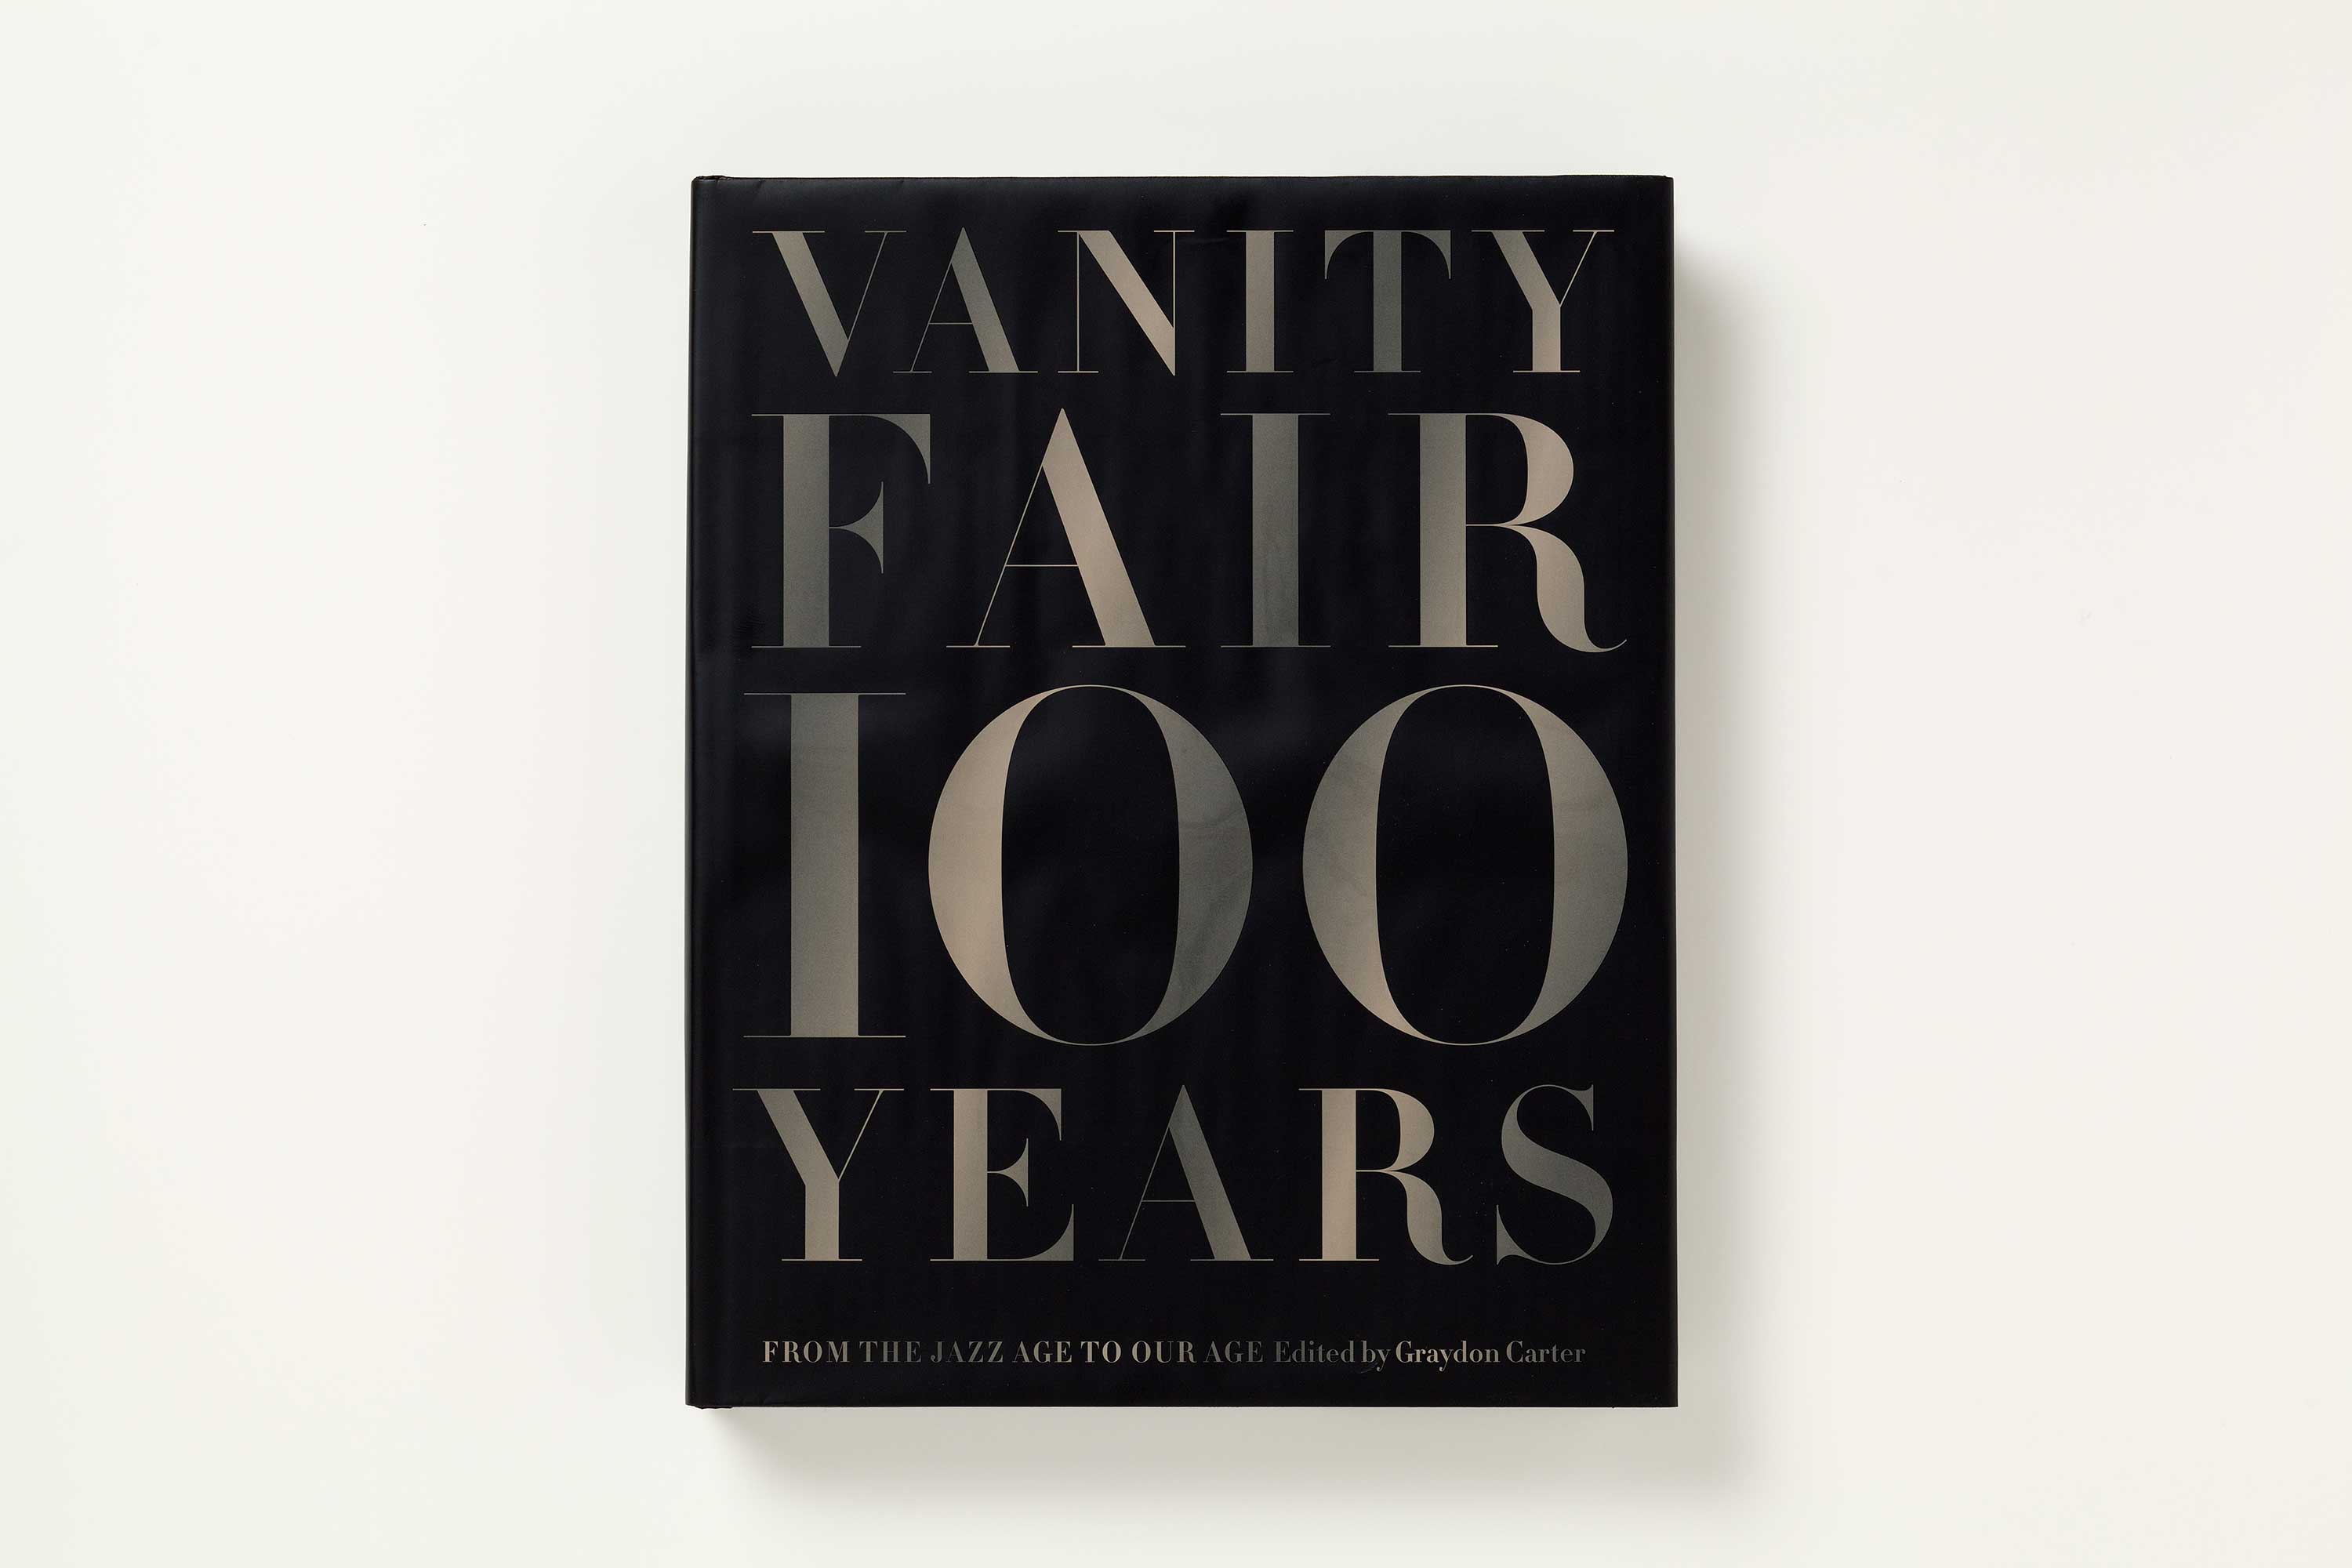 Vanity Fair 100 Years'